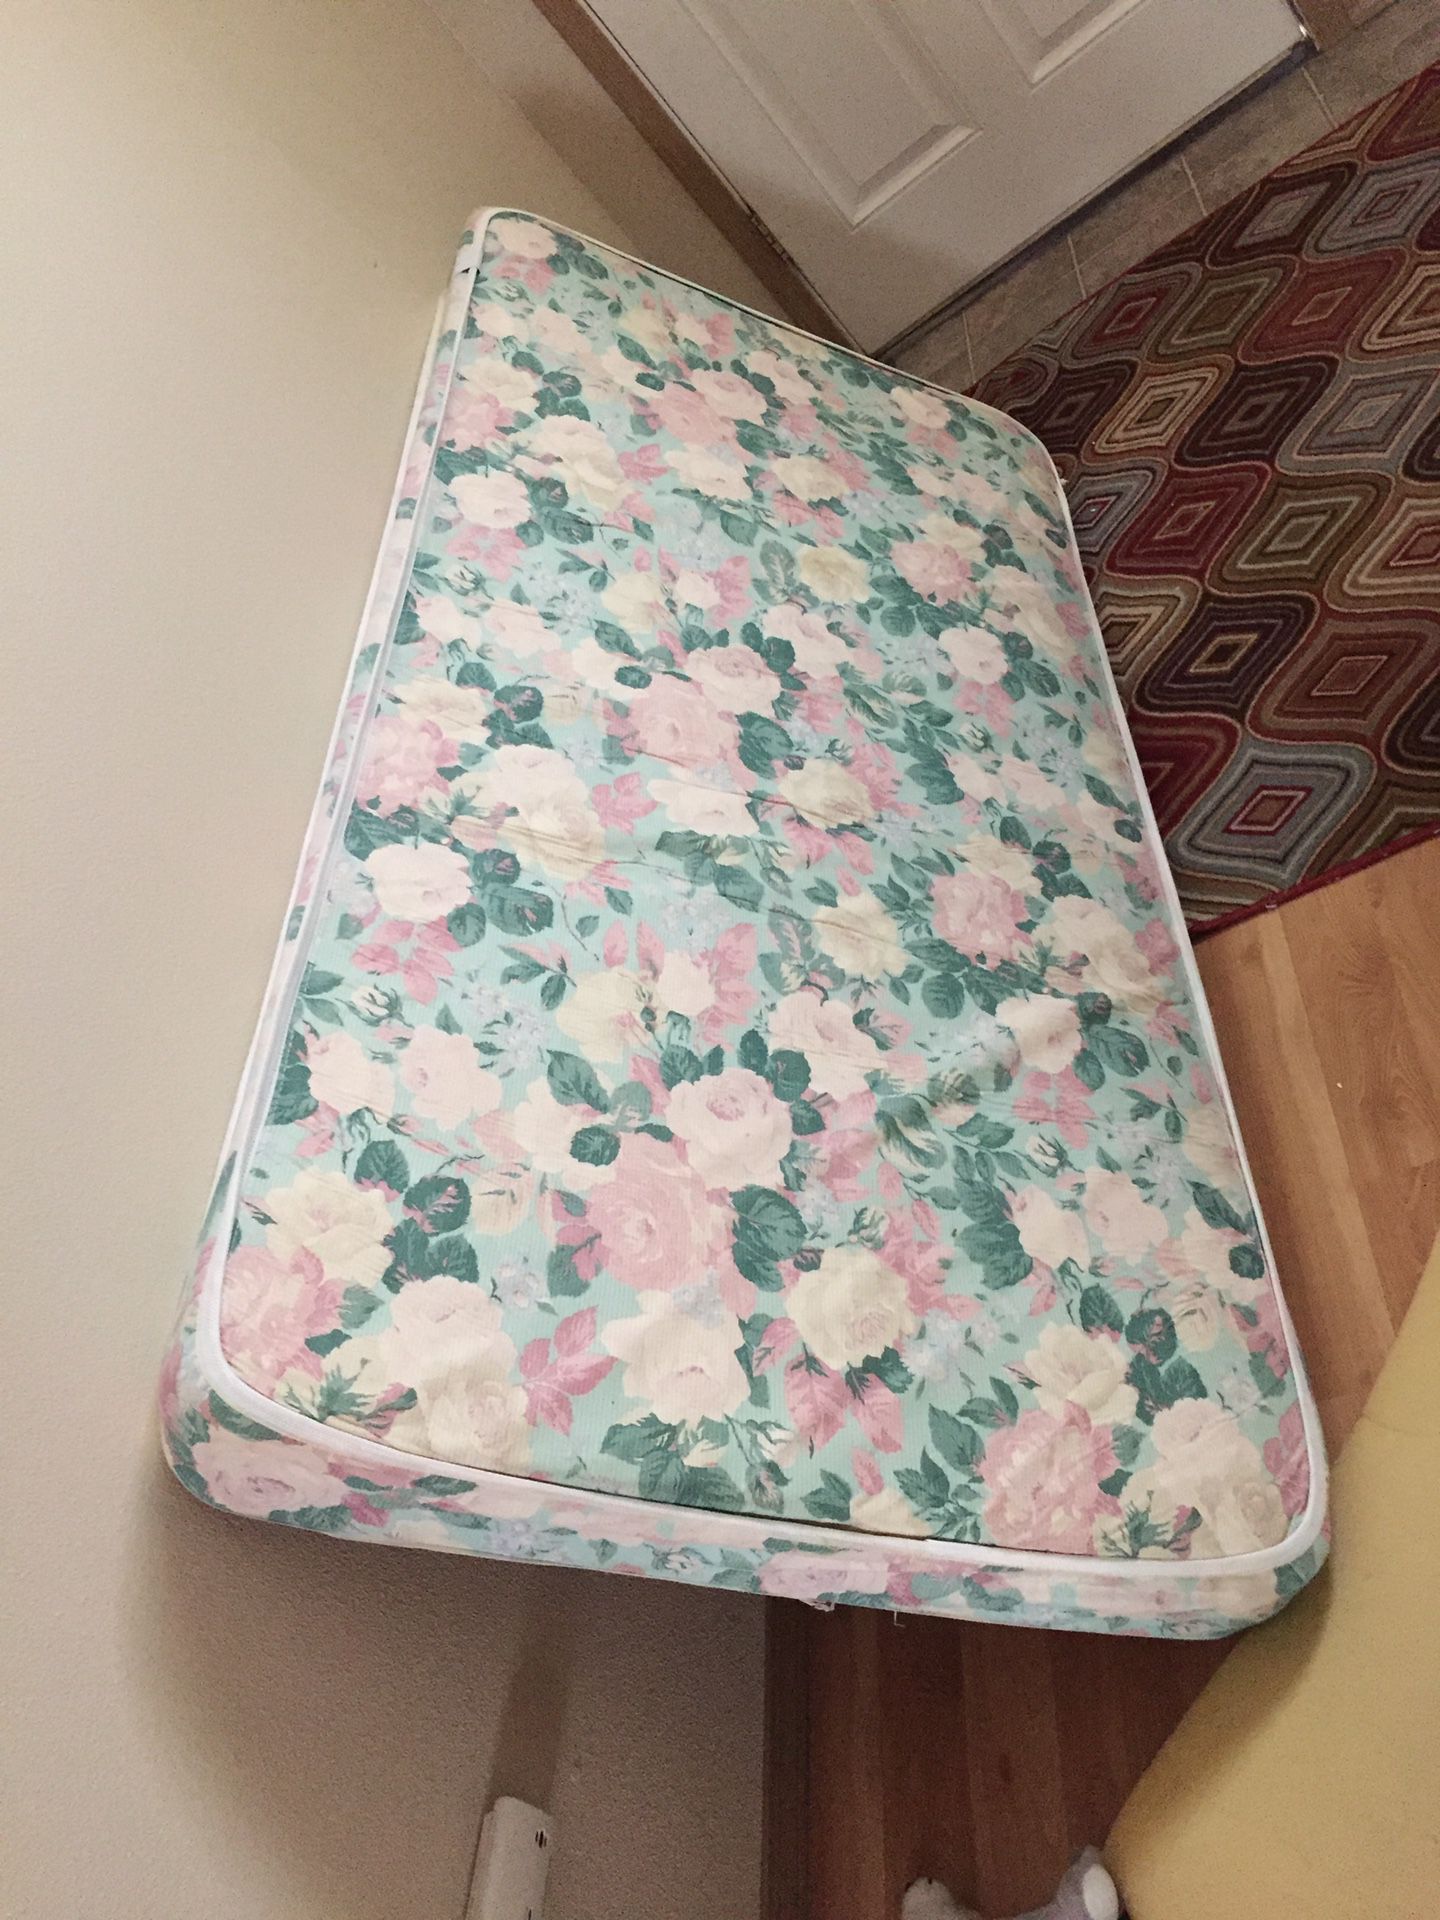 Free twin size mattress